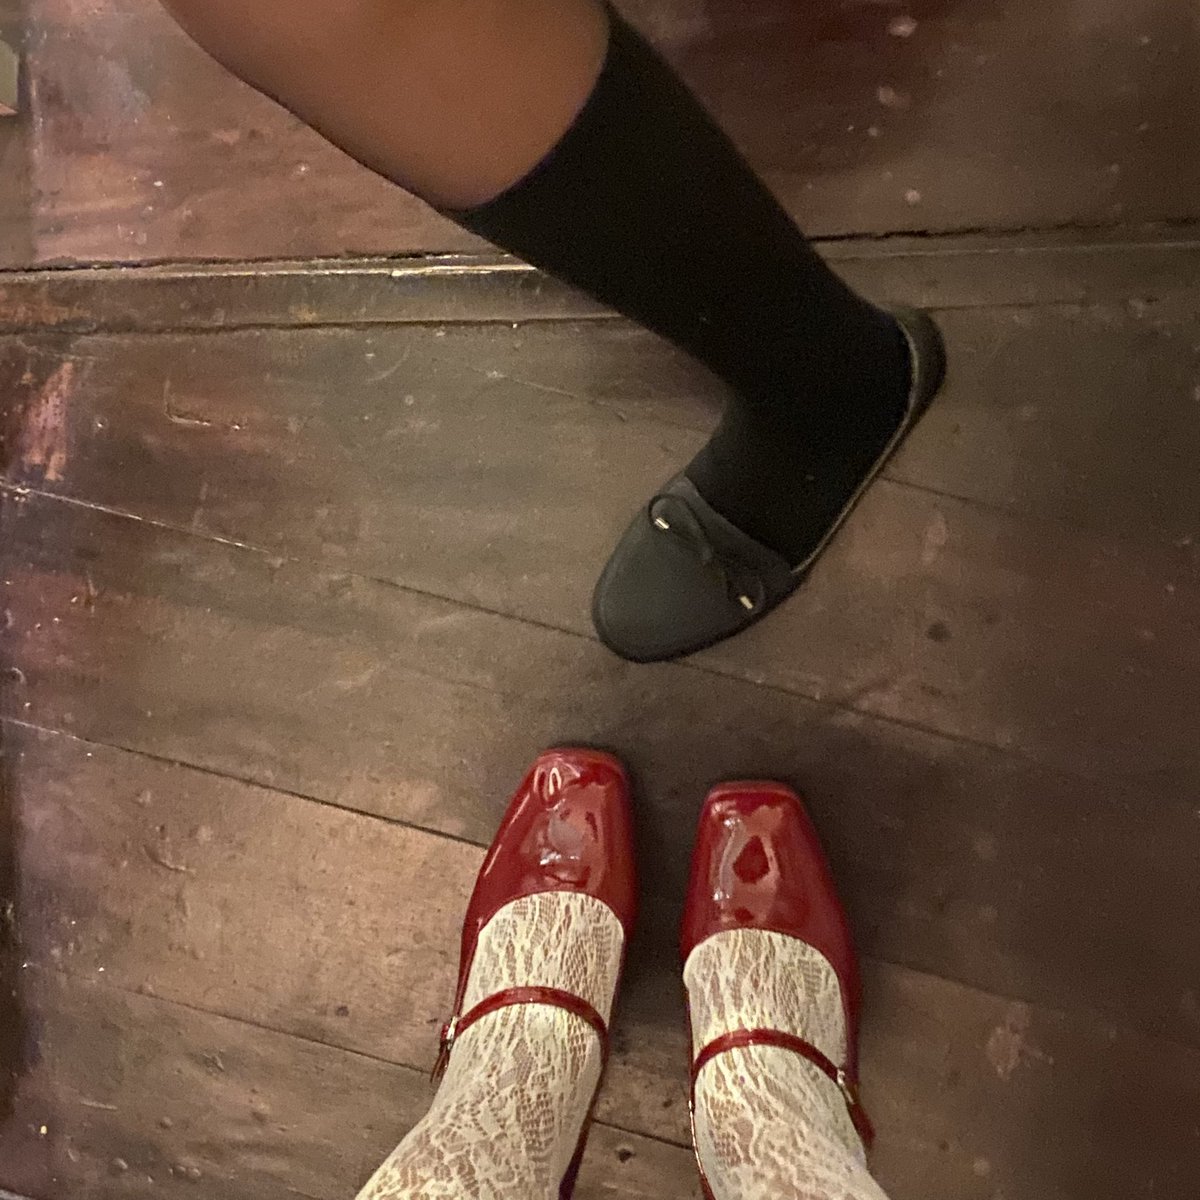 ส่งต่อรองเท้าThe Mully - Labotte.bkk สีแดง
Size 42 อุปกรณ์ครบ 950 รวมส่ง (from 1,190) 
ใส่ไปรอบเดียวค่ะ
#ส่งต่อlabotte  #labottebkk #ส่งต่อส้นสูง #ส่งต่อรองเท้ามือสอง #ส่งต่อรองเท้า #ส่งต่อlabotte #labottebkk #labotte